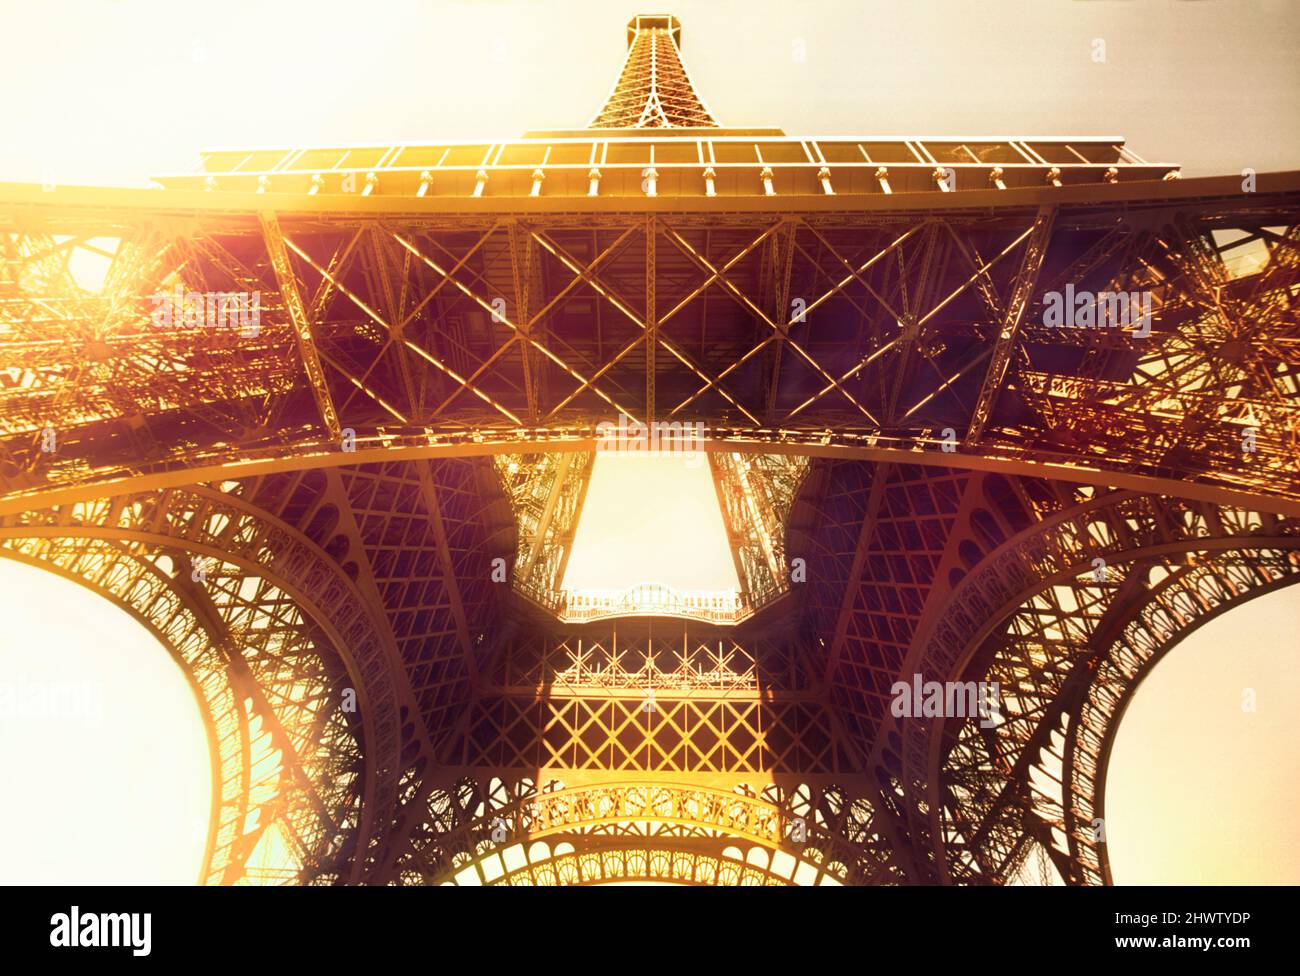 Eiffelturm, Paris, Morgengrauen. Blick auf das berühmte schmiedeeiserne Gittermonument mit Sonnenblende. Belle Epoque Architektur Frankreich Stockfoto